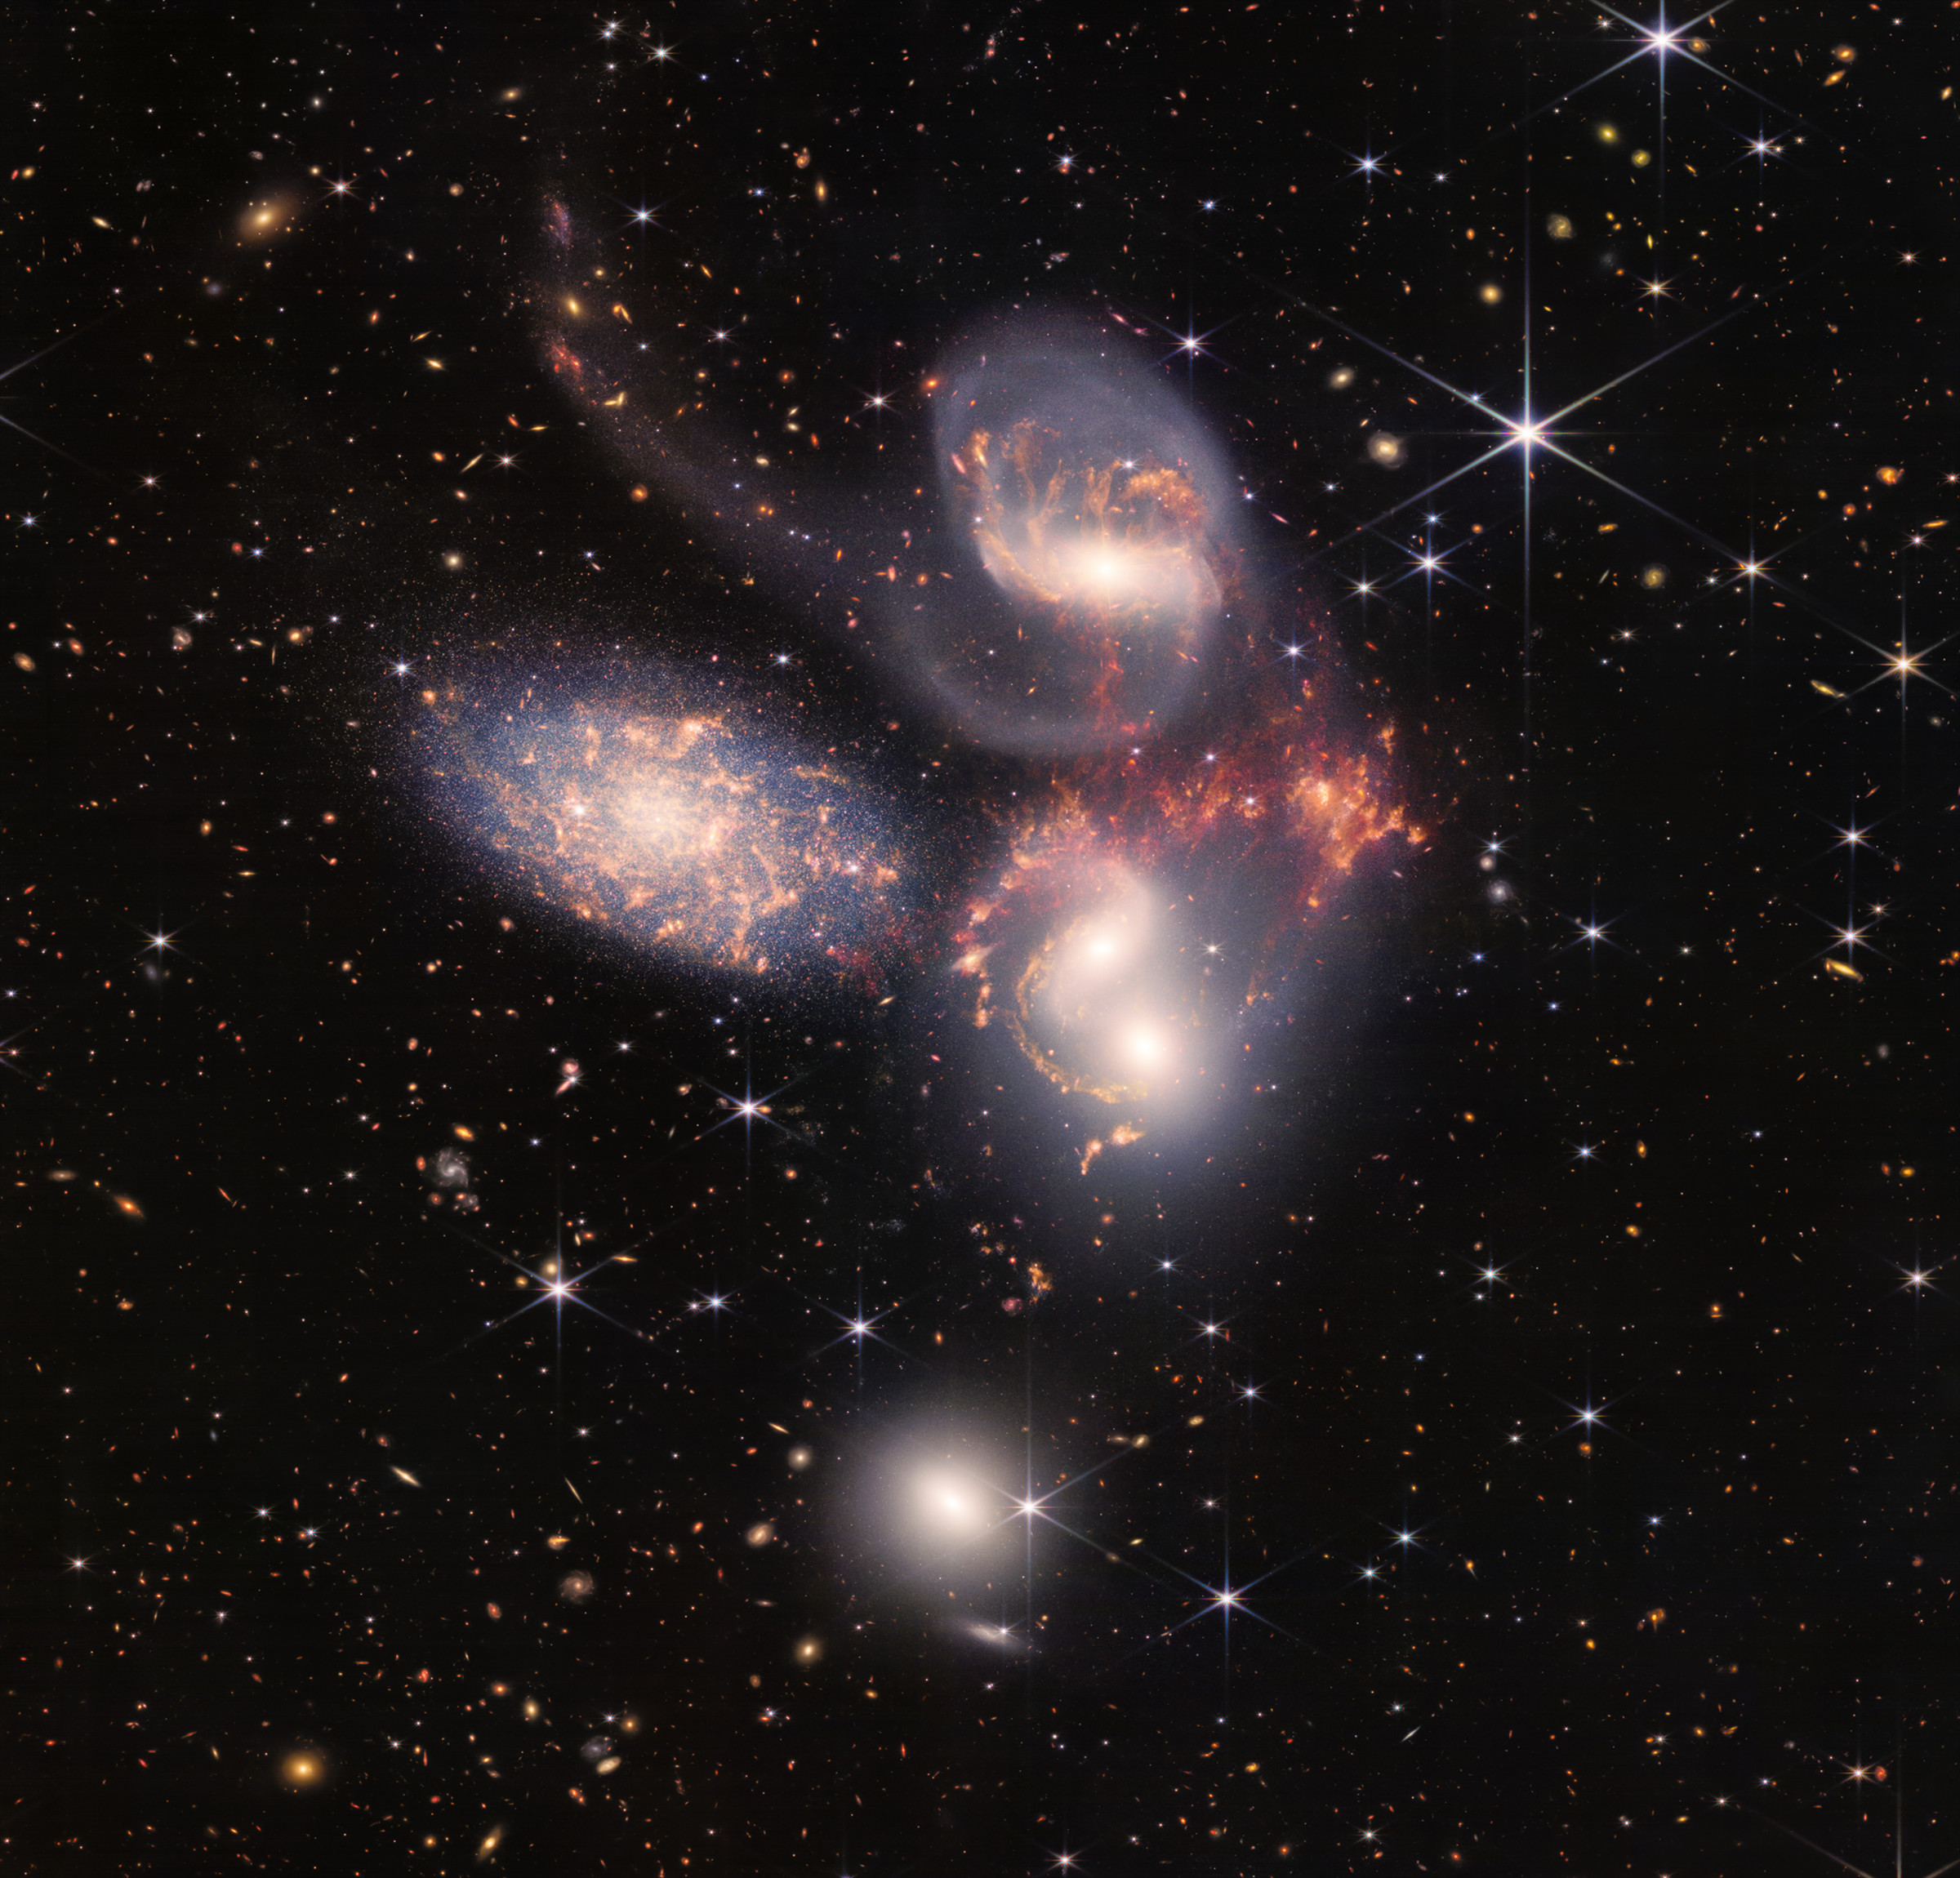 Stephan’s Quintet as seen by JWST.